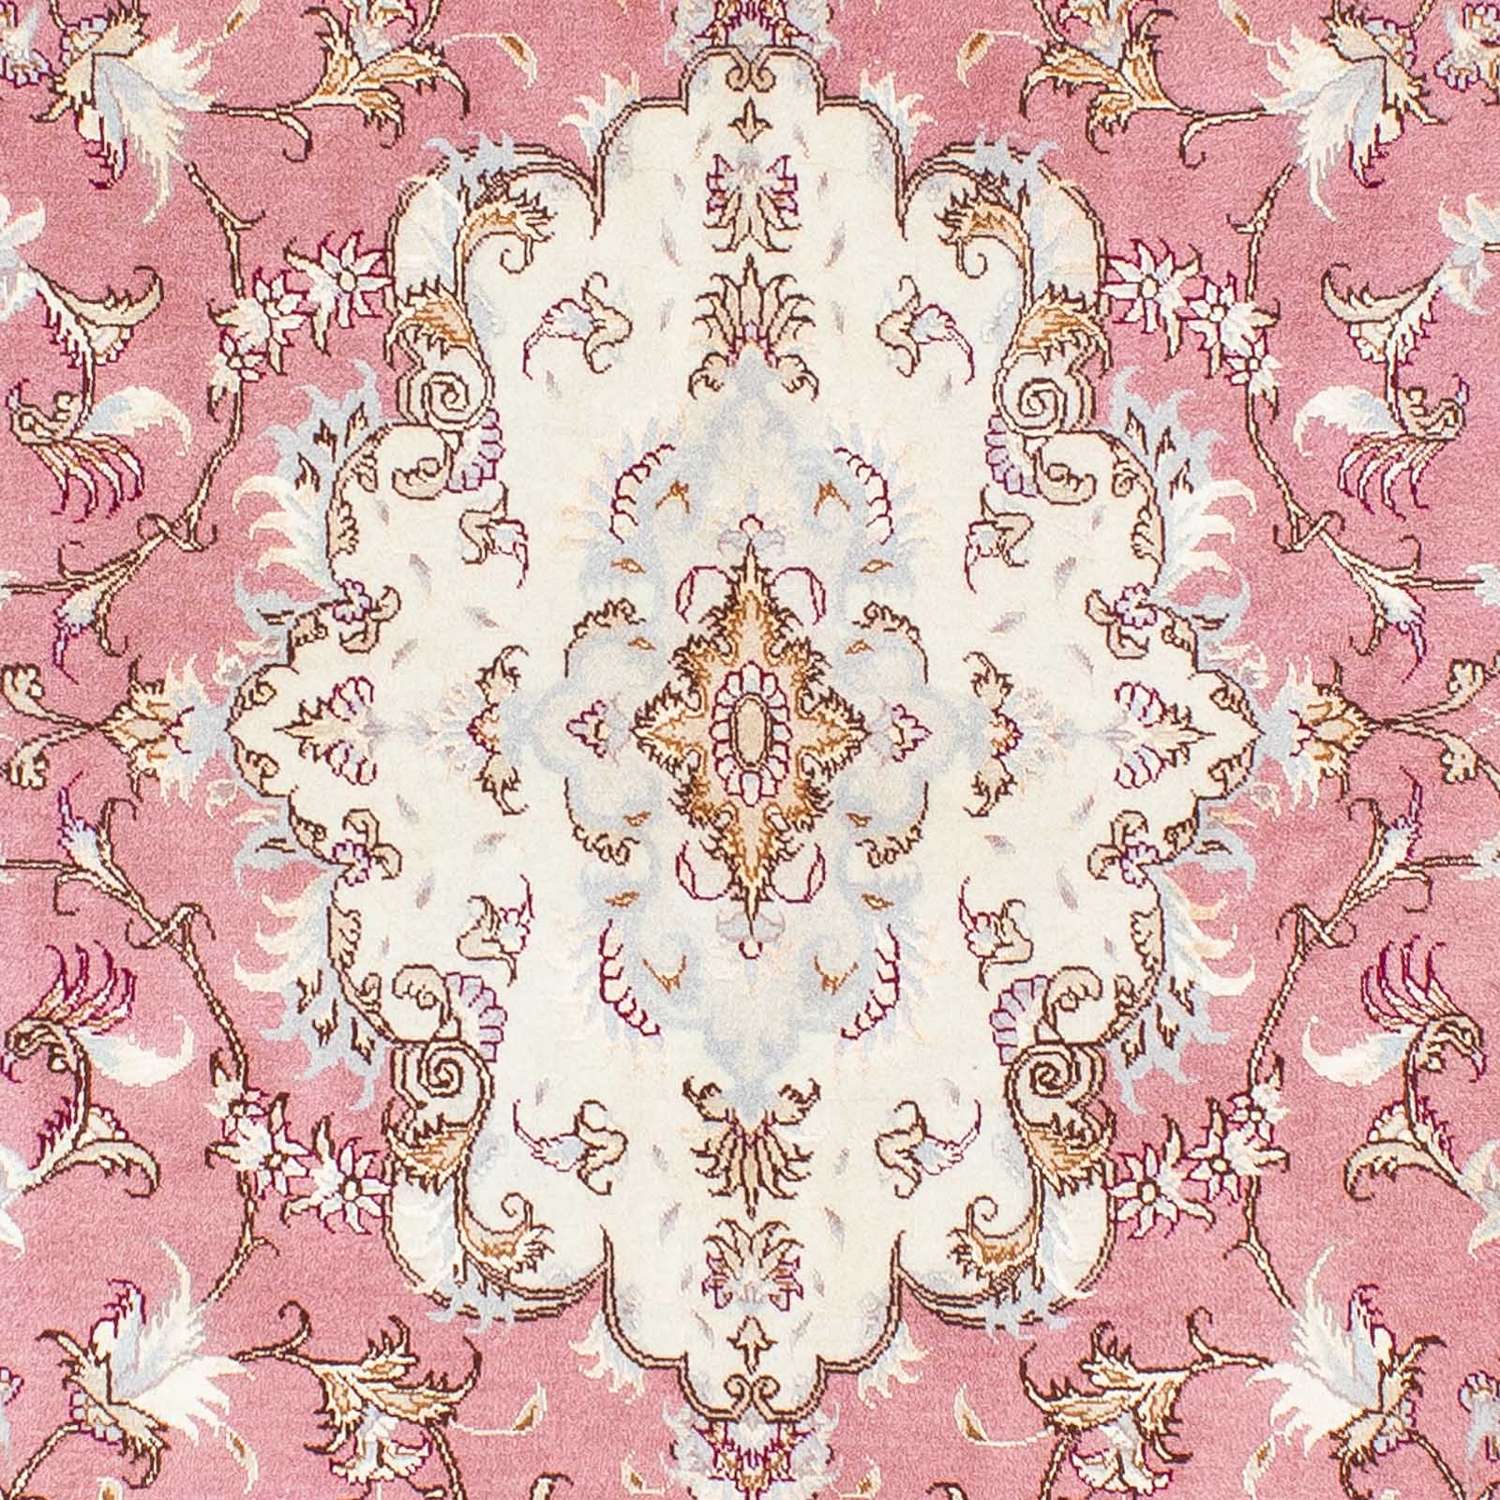 Persisk tæppe - Tabriz - Royal - 236 x 166 cm - pink